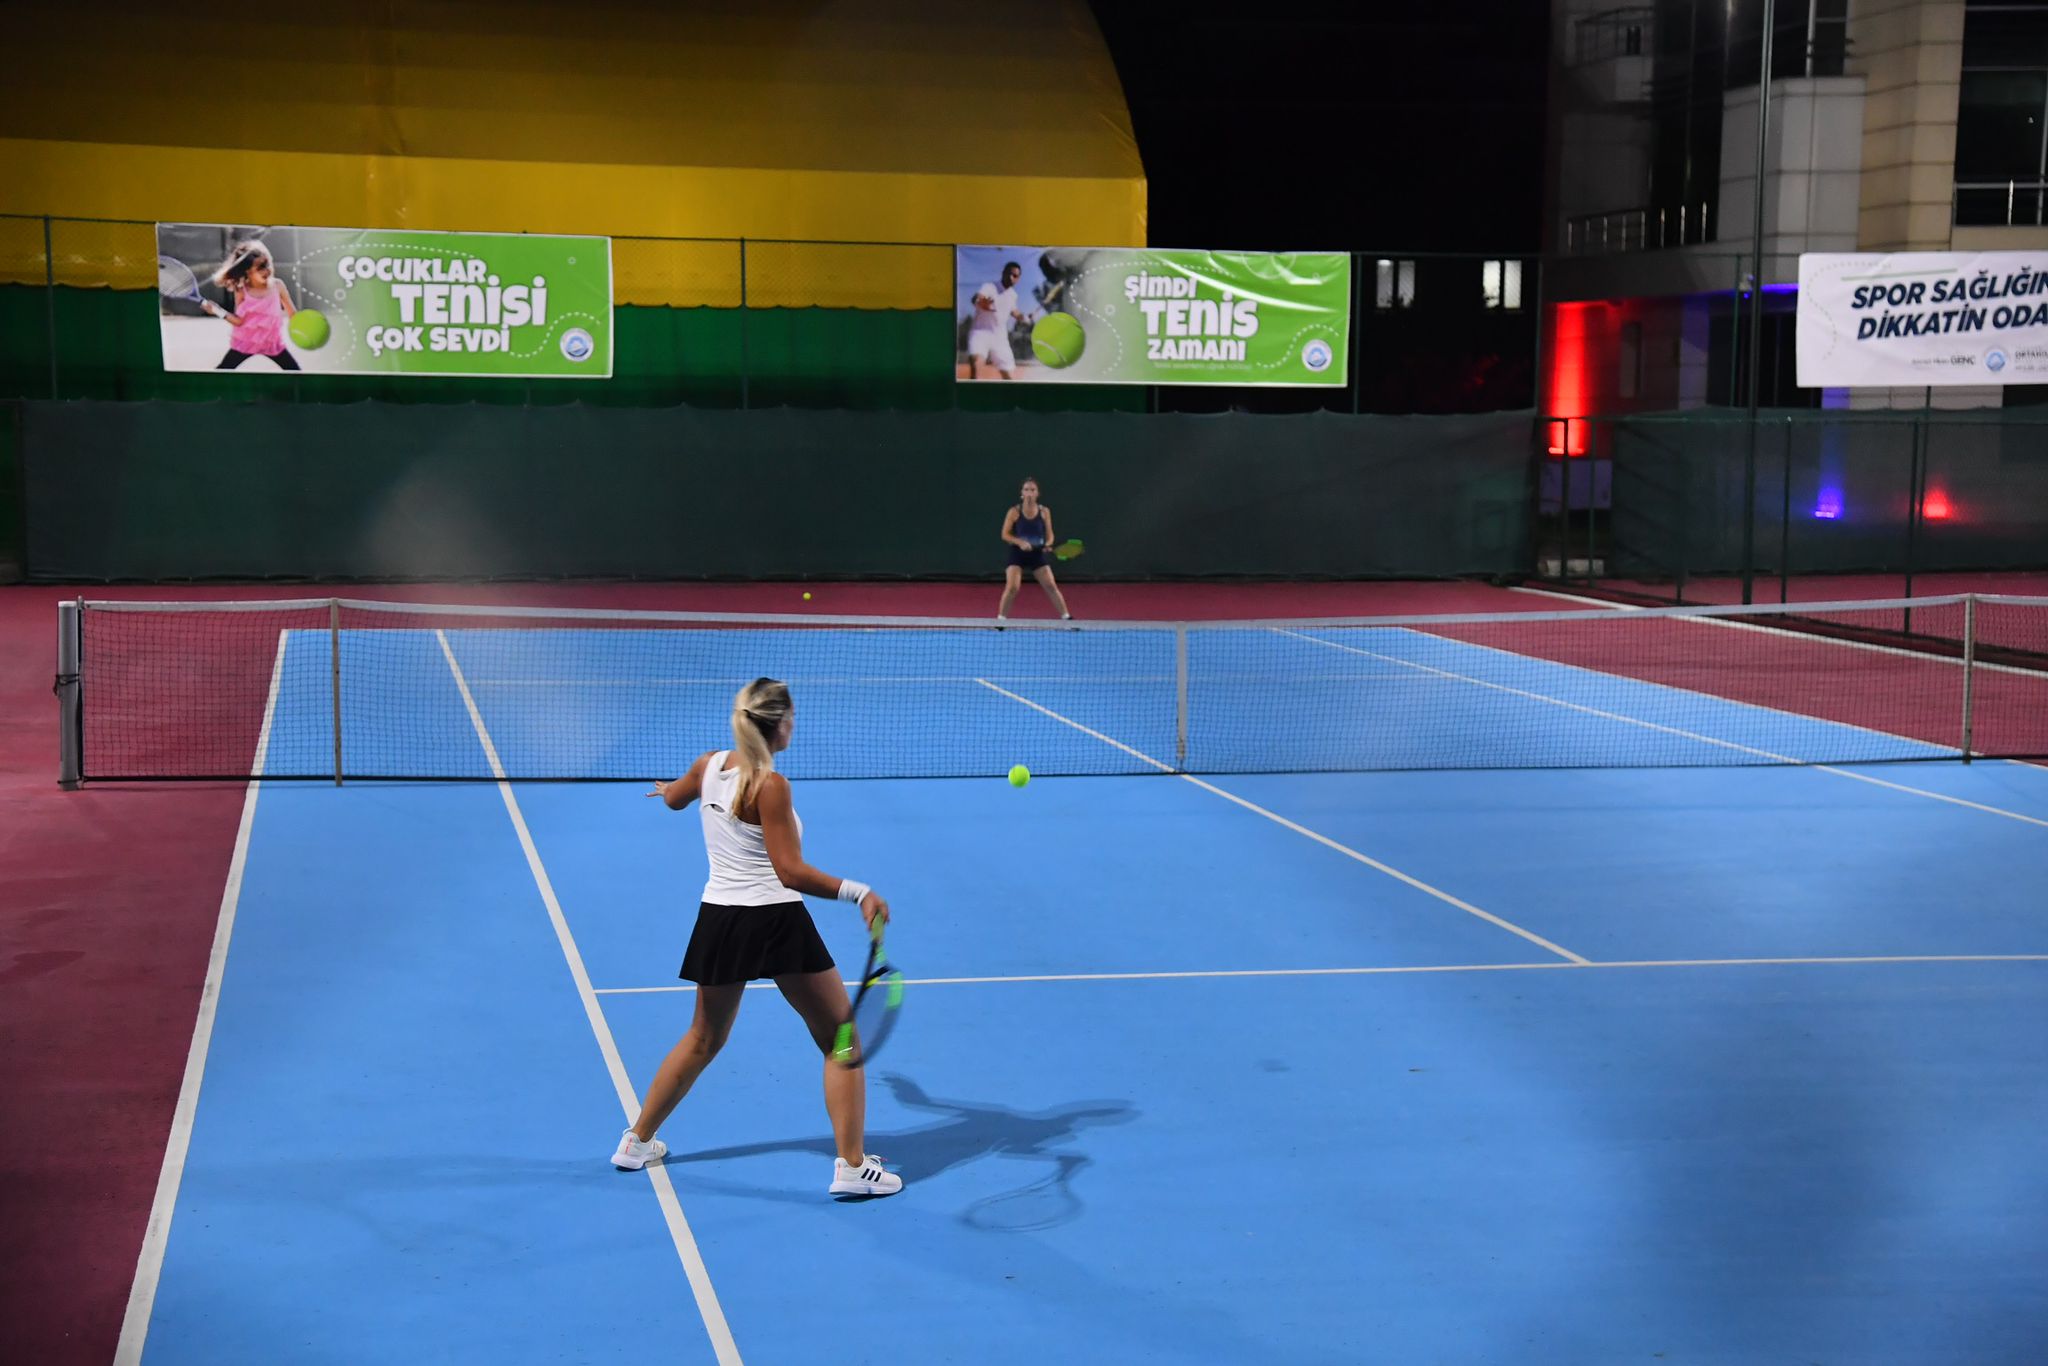 Ortahisar Belediyesi'nin düzenlediği "Veteran Tenis Turnuvası" sürüyor